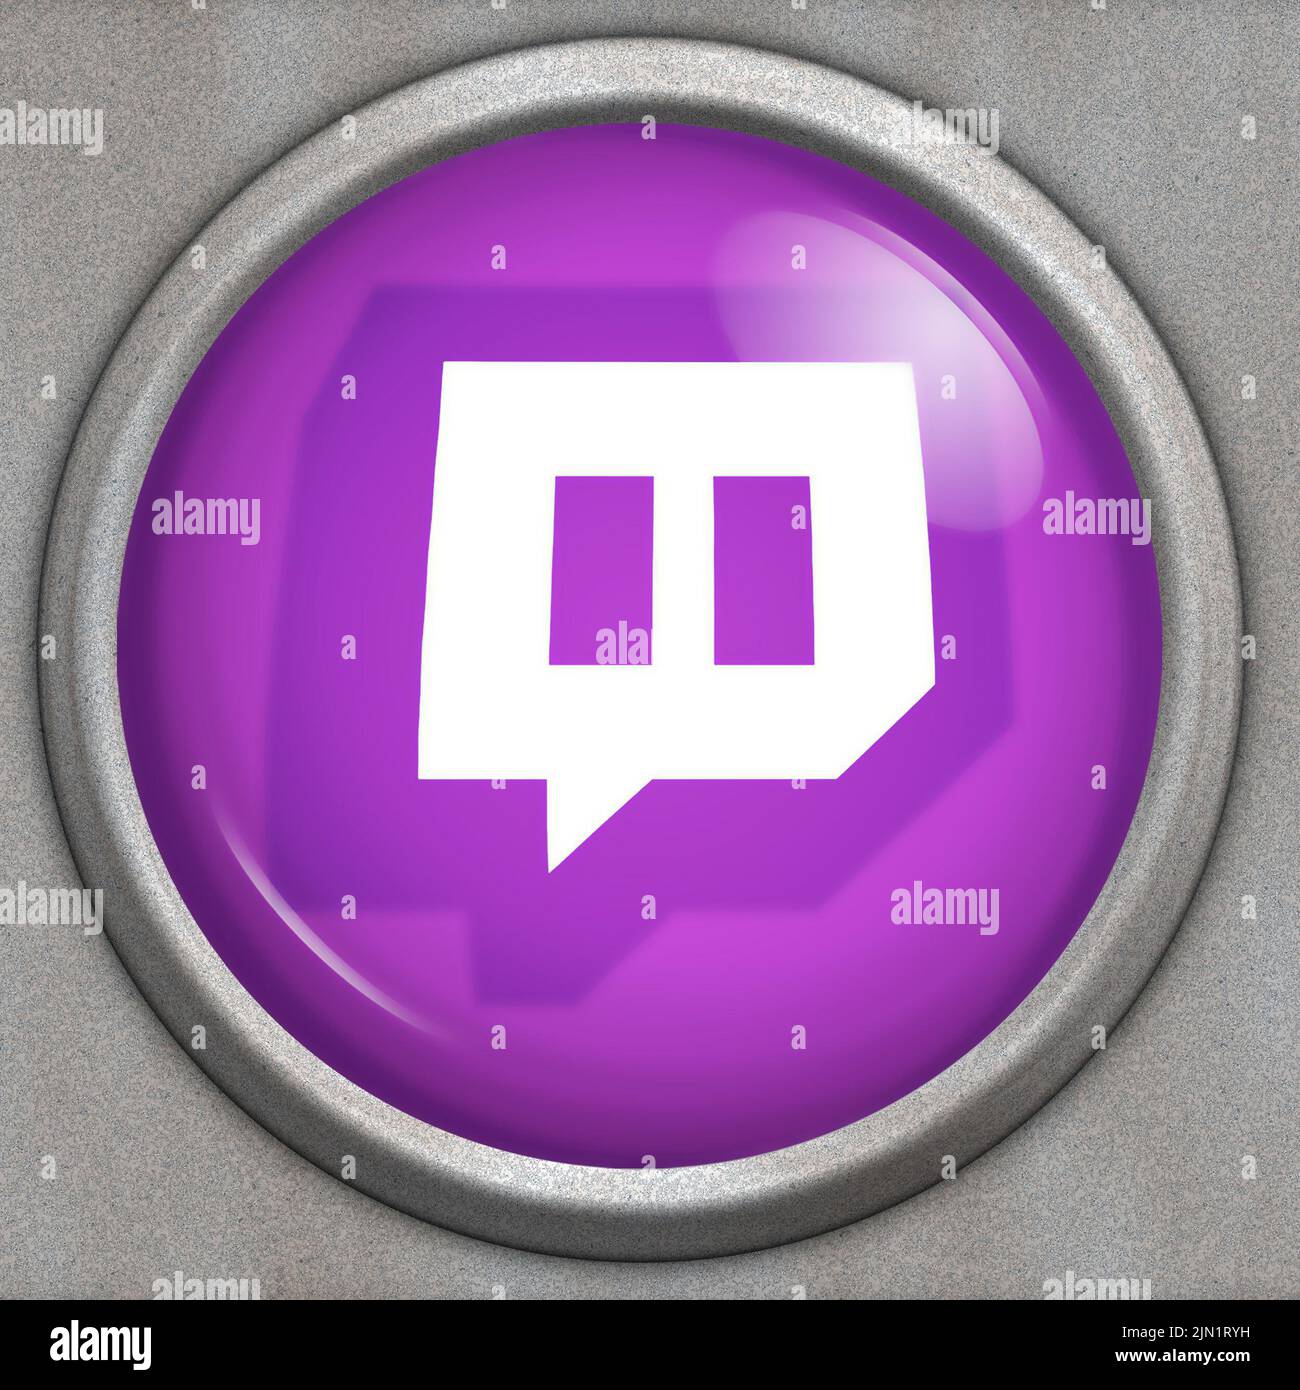 Botón con logotipo del servicio de medios sociales Twitch Foto de stock